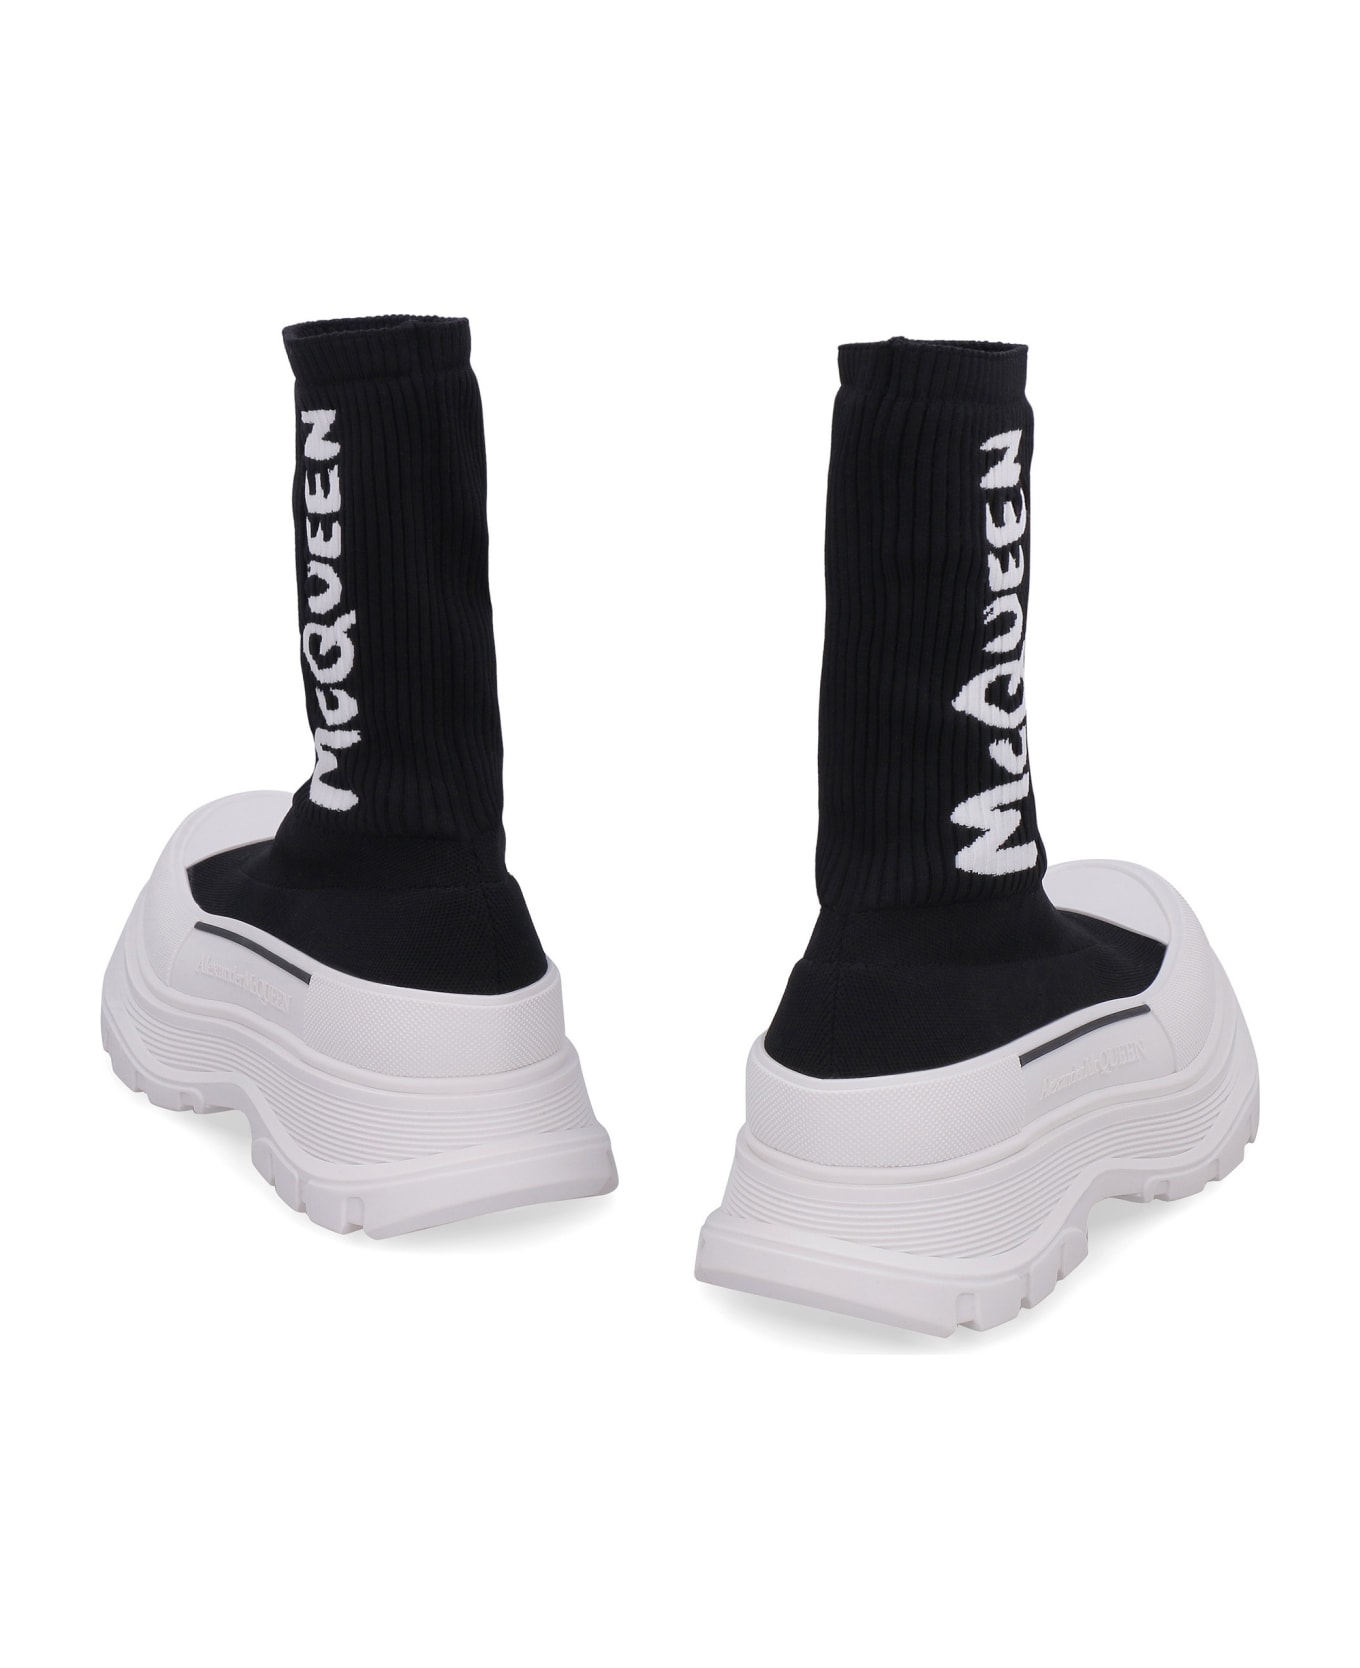 Alexander McQueen Tread Slick Knitted Boots - black ウェッジシューズ